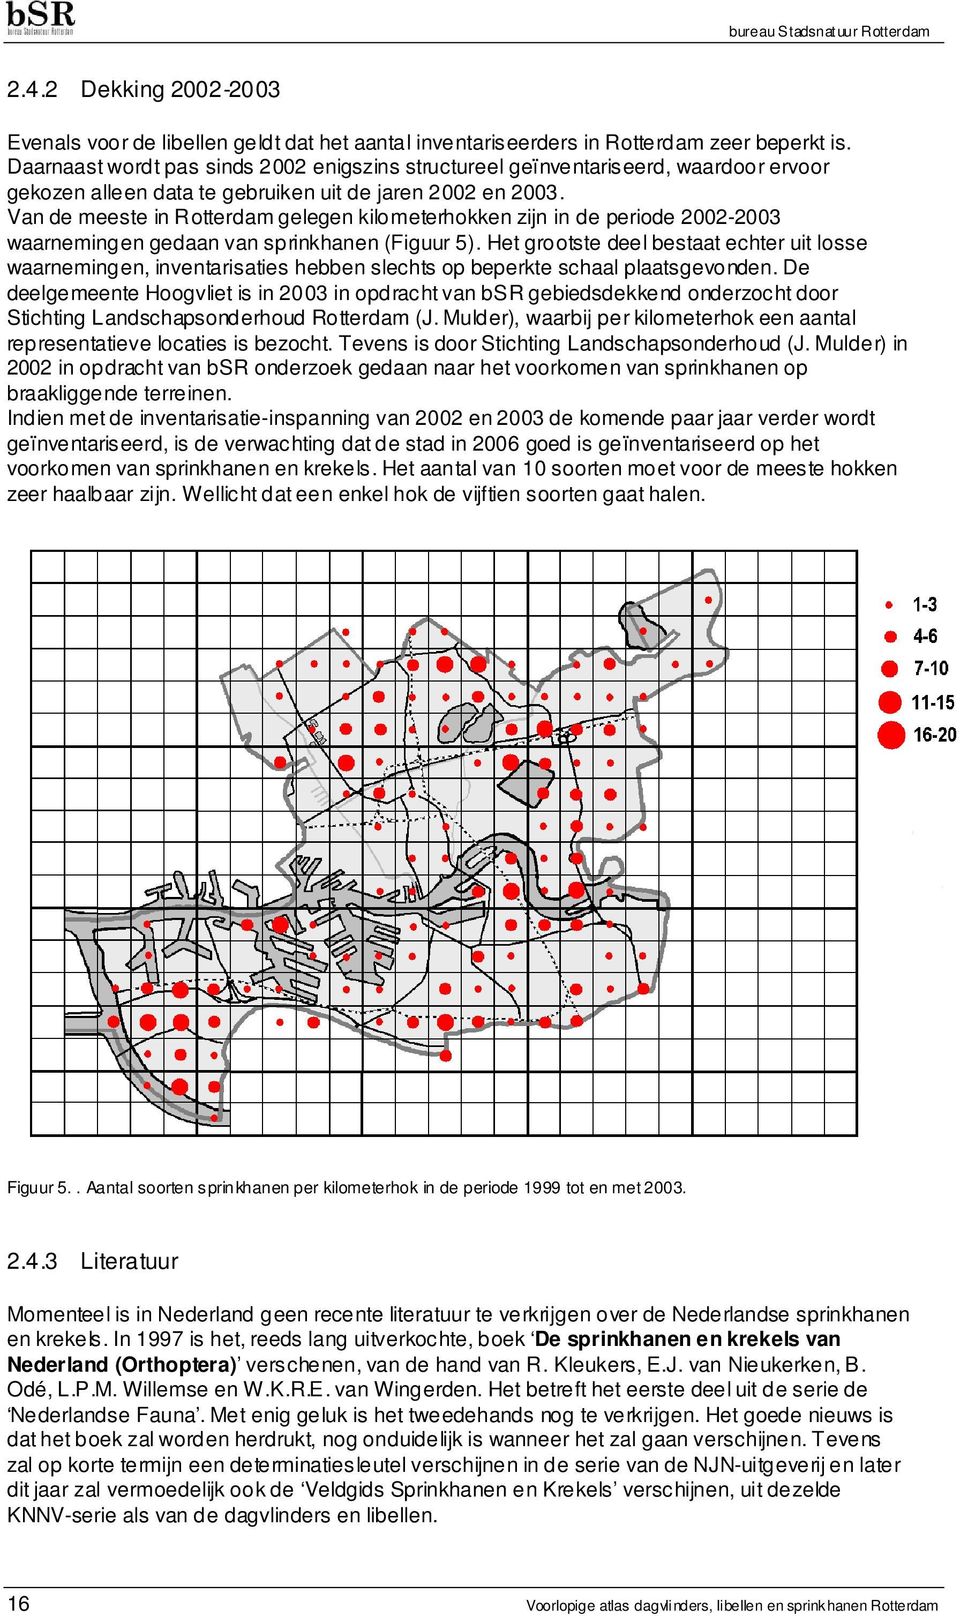 Van de meeste in Rotterdam gelegen kilometerhokken zijn in de periode 2002-2003 waarnemingen gedaan van sprinkhanen (Figuur 5).